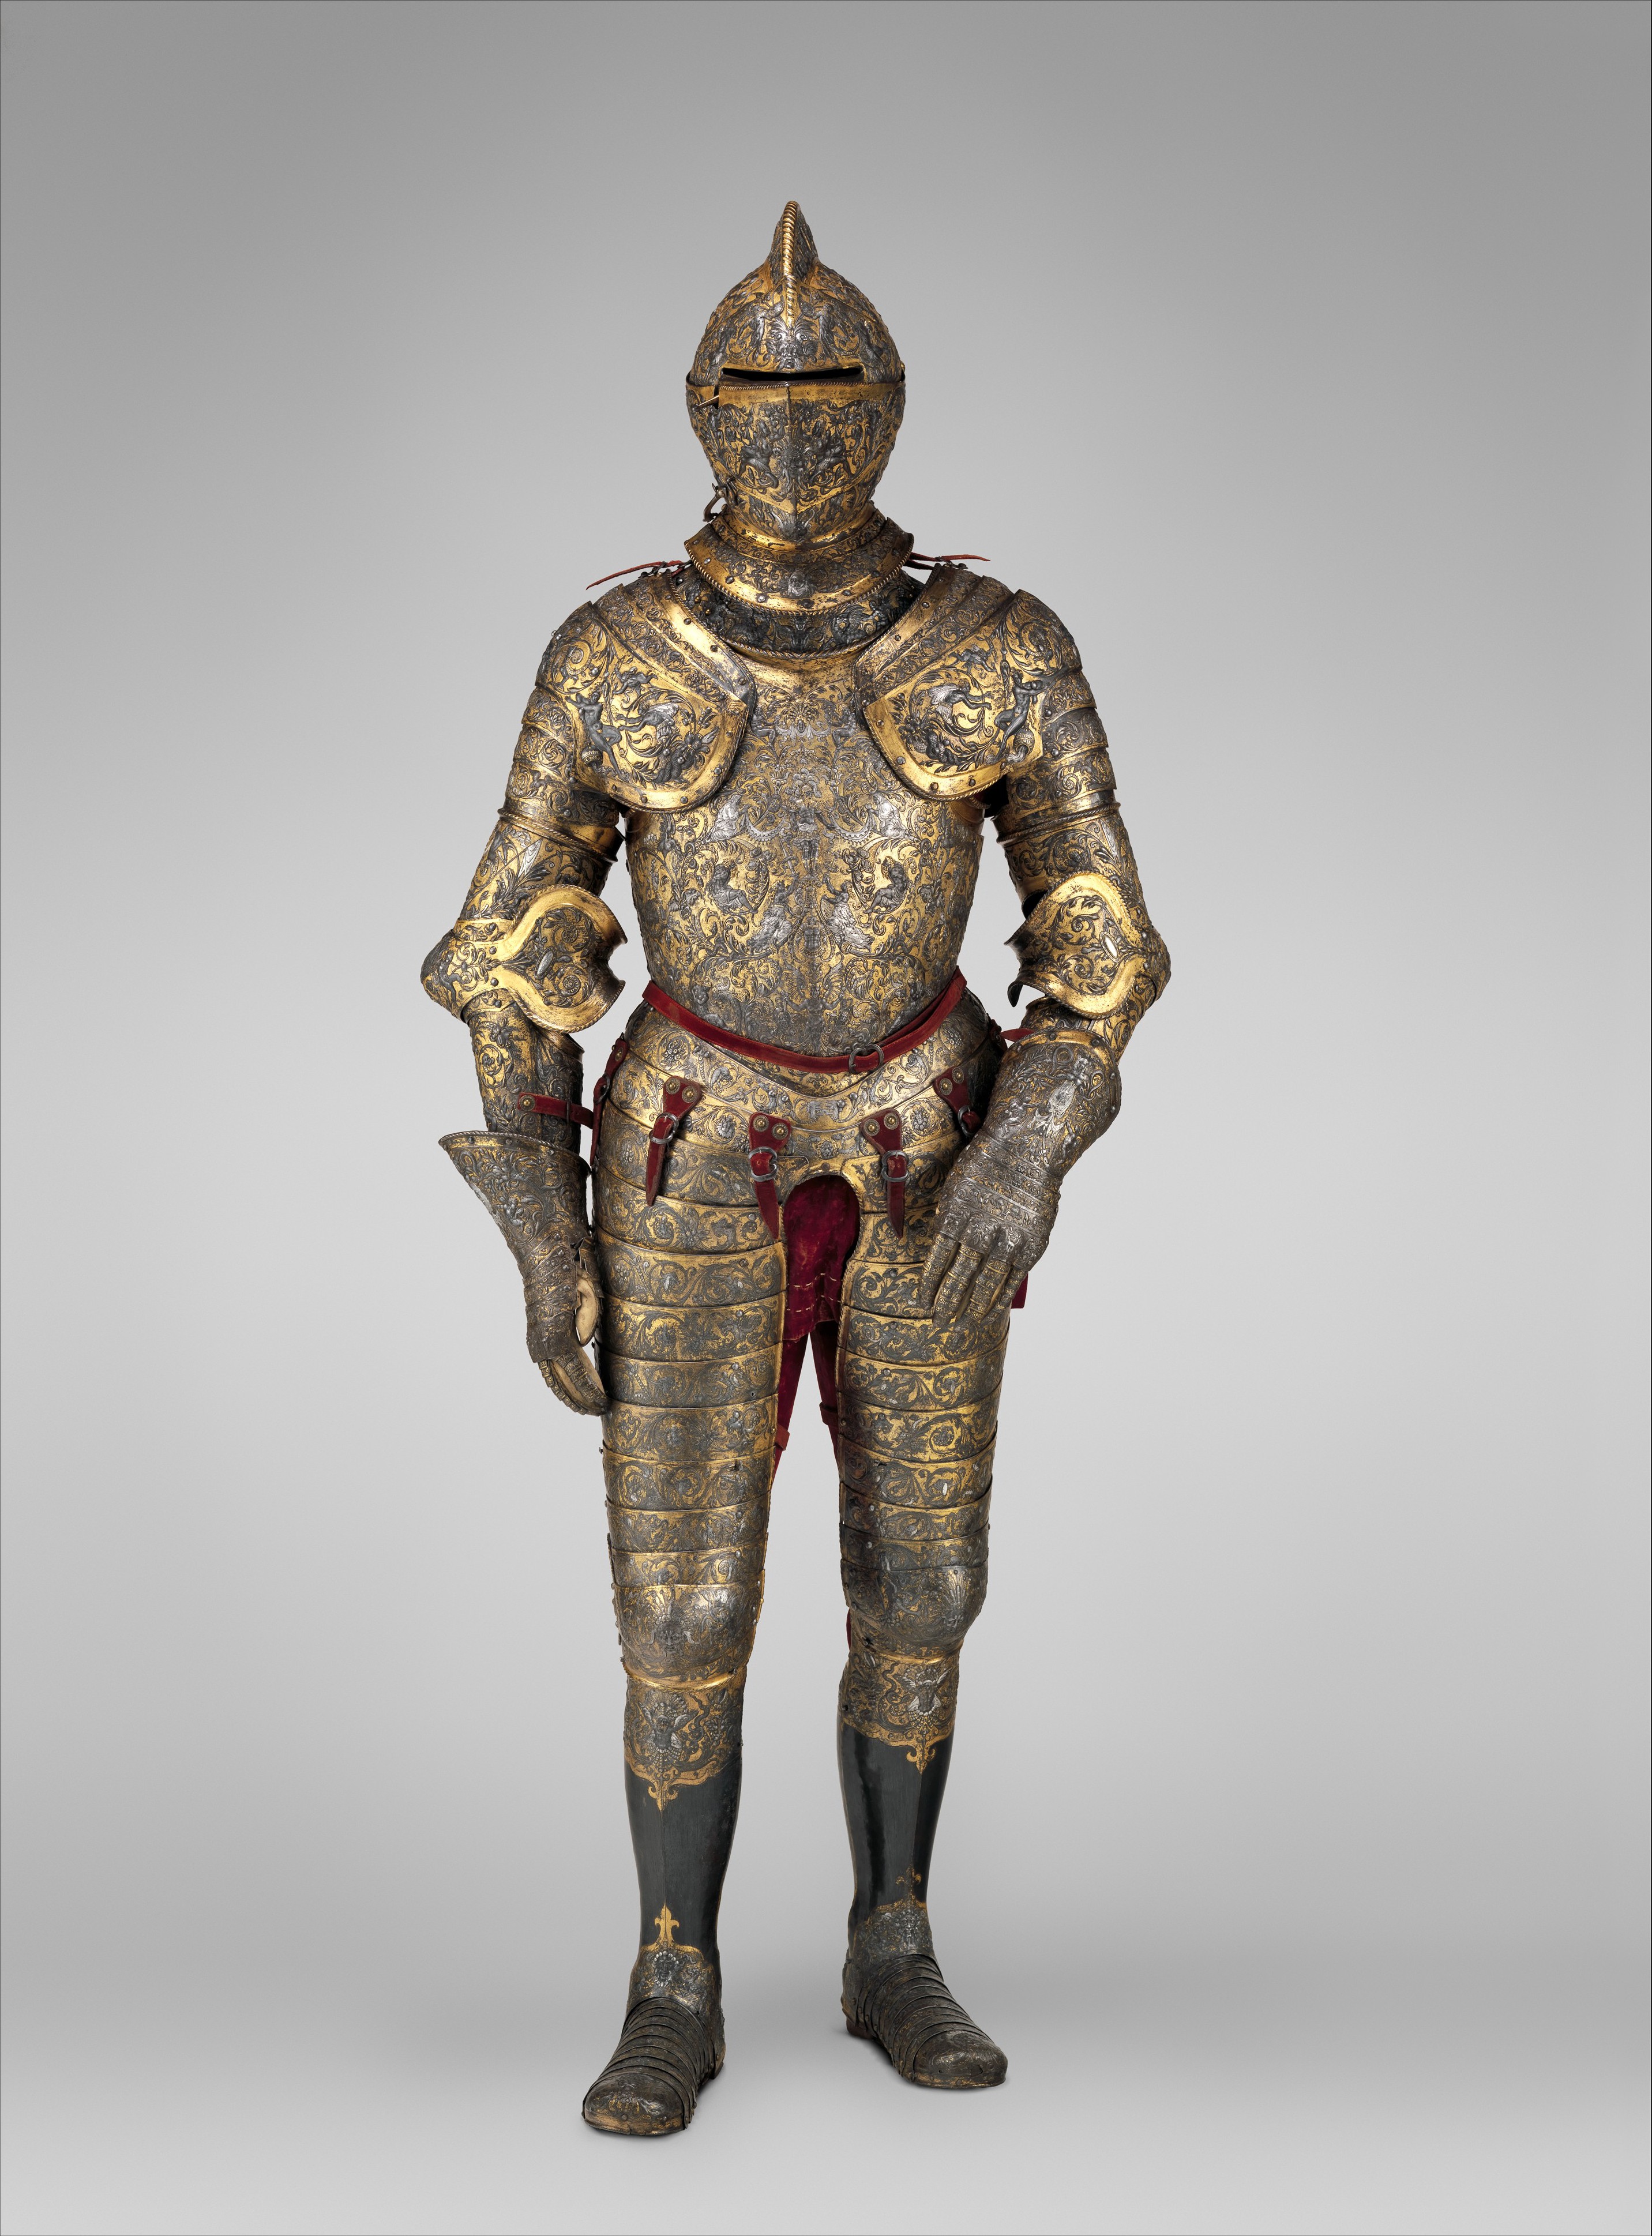 프랑스 왕 헨리 2세의 갑옷(Armor of Henry II, King of France) by Jean Cousin le Vieux - 1555년 경 - 187.96 cm, 24.20 kg 